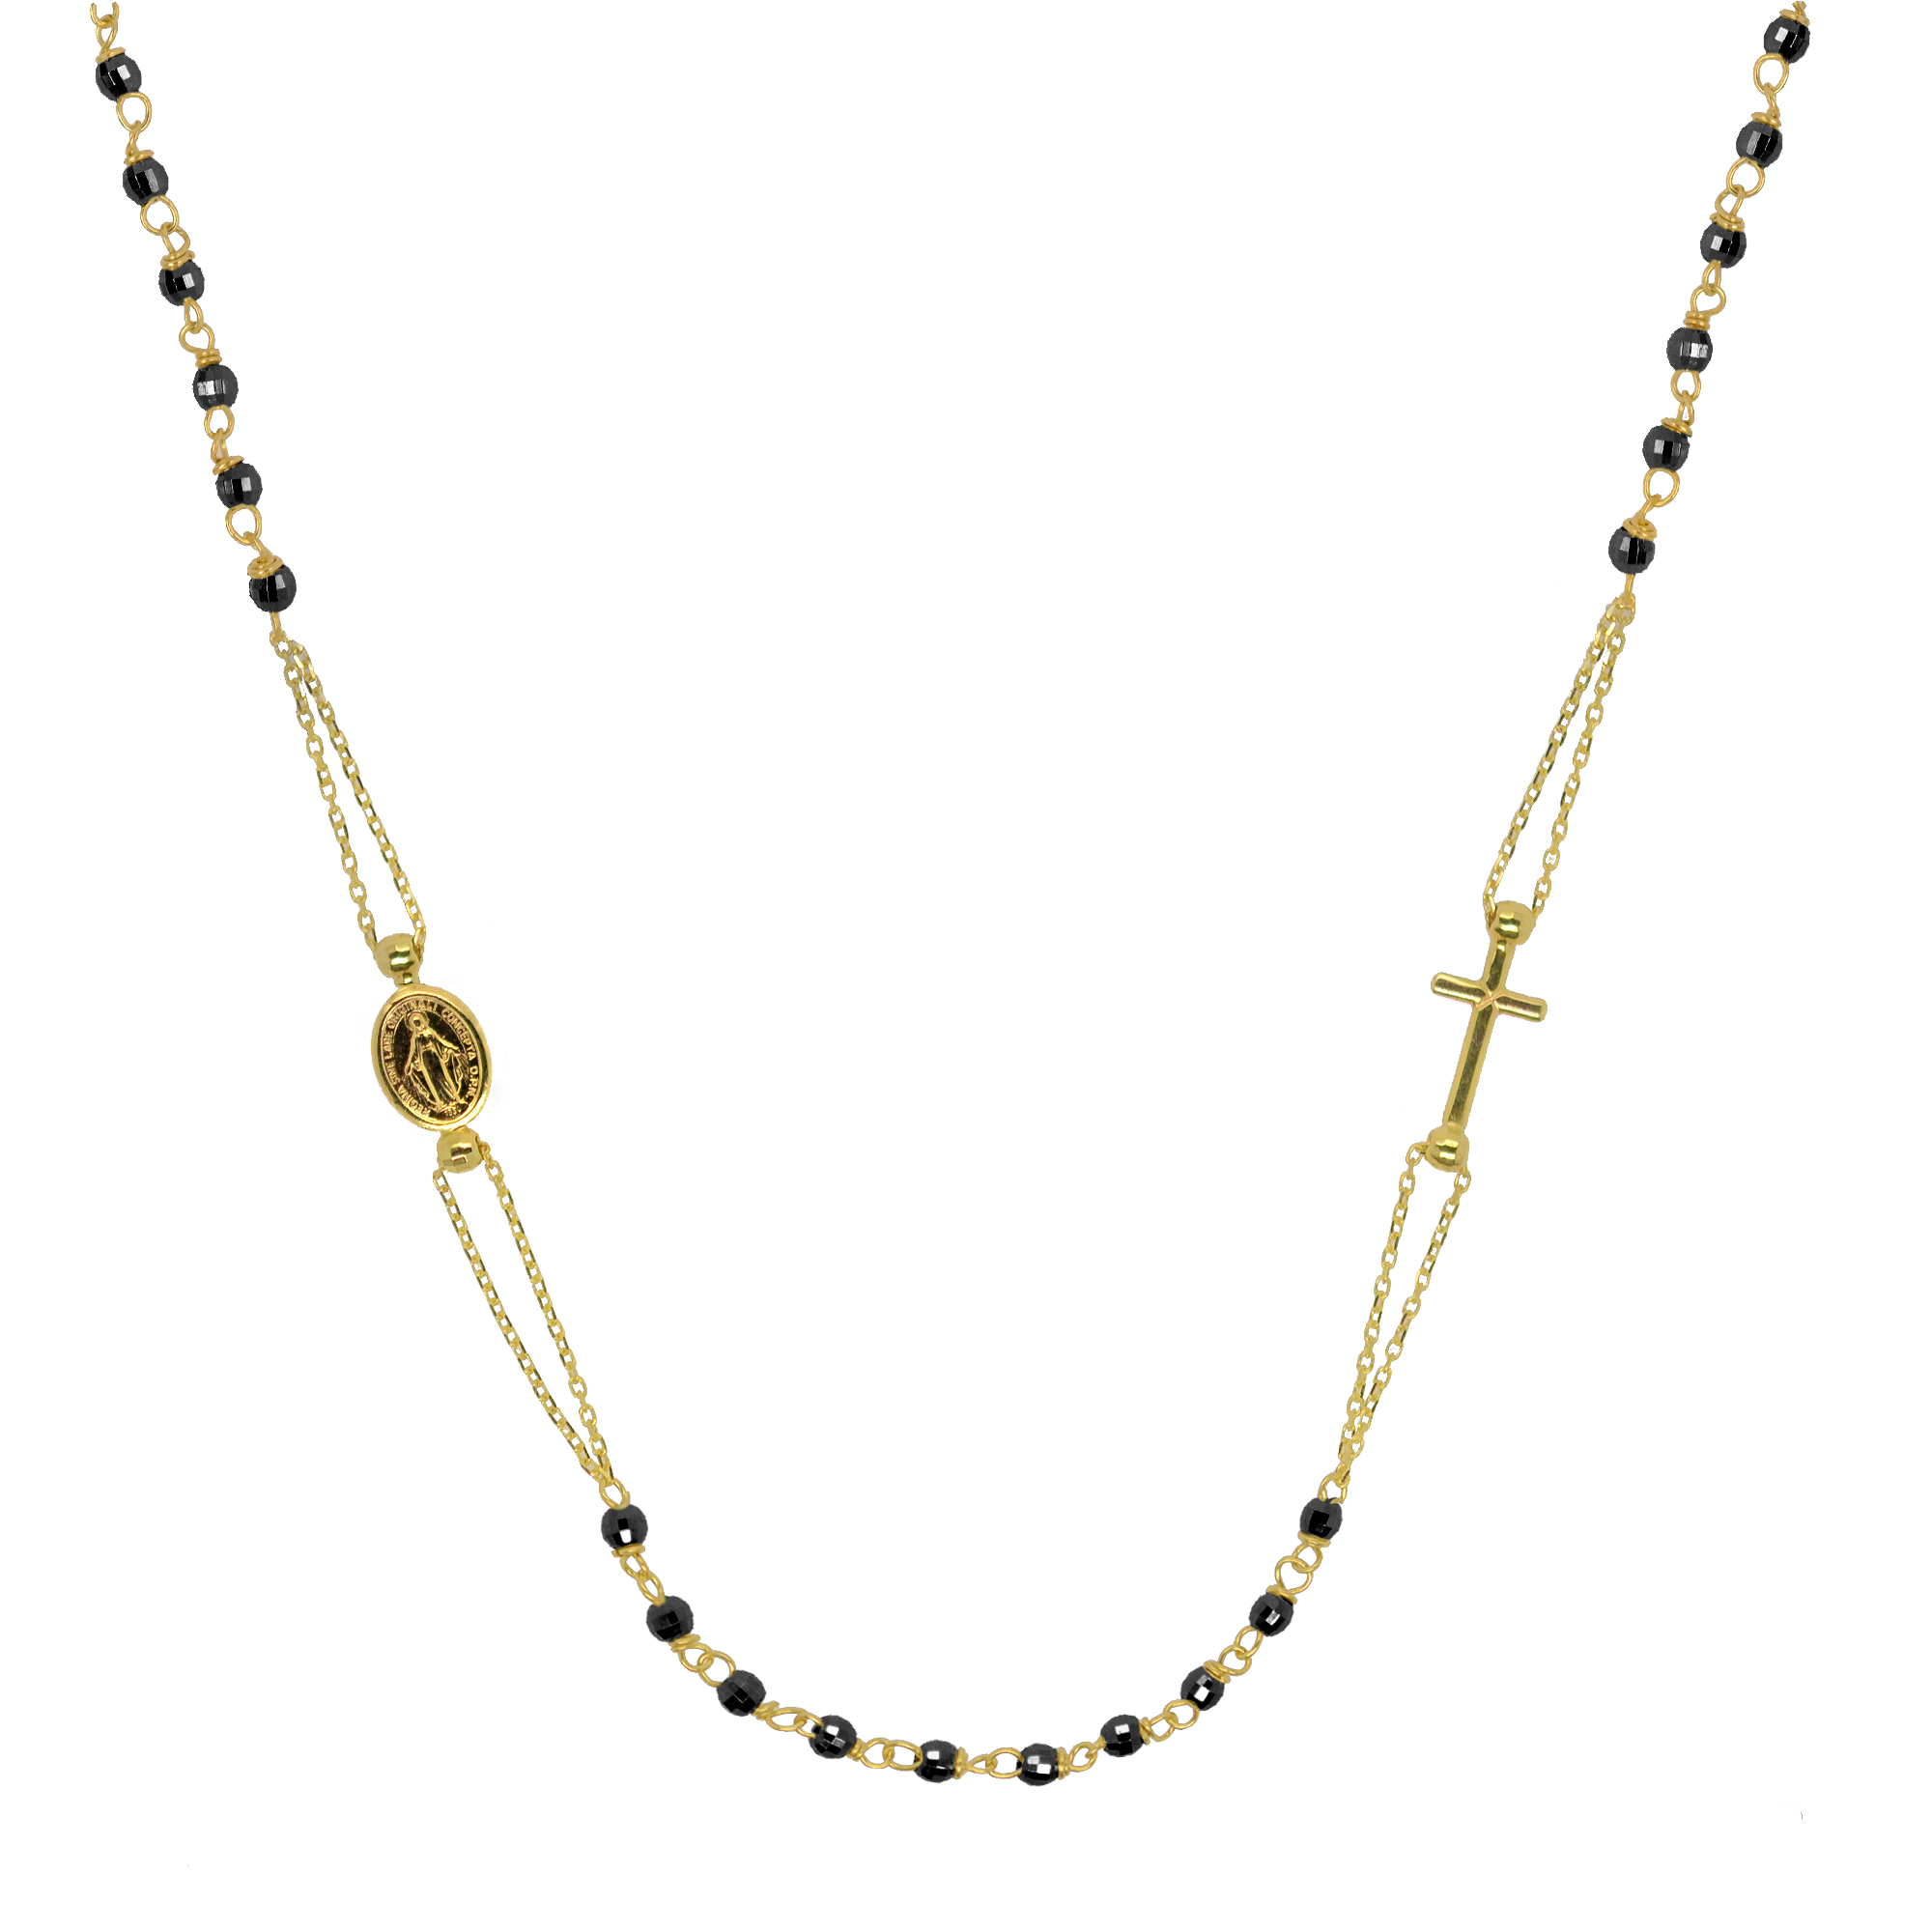 Evolution Group Zlatý 14 karátový náhrdelník růženec s křížem a medailonkem s Pannou Marií RŽ04 černý